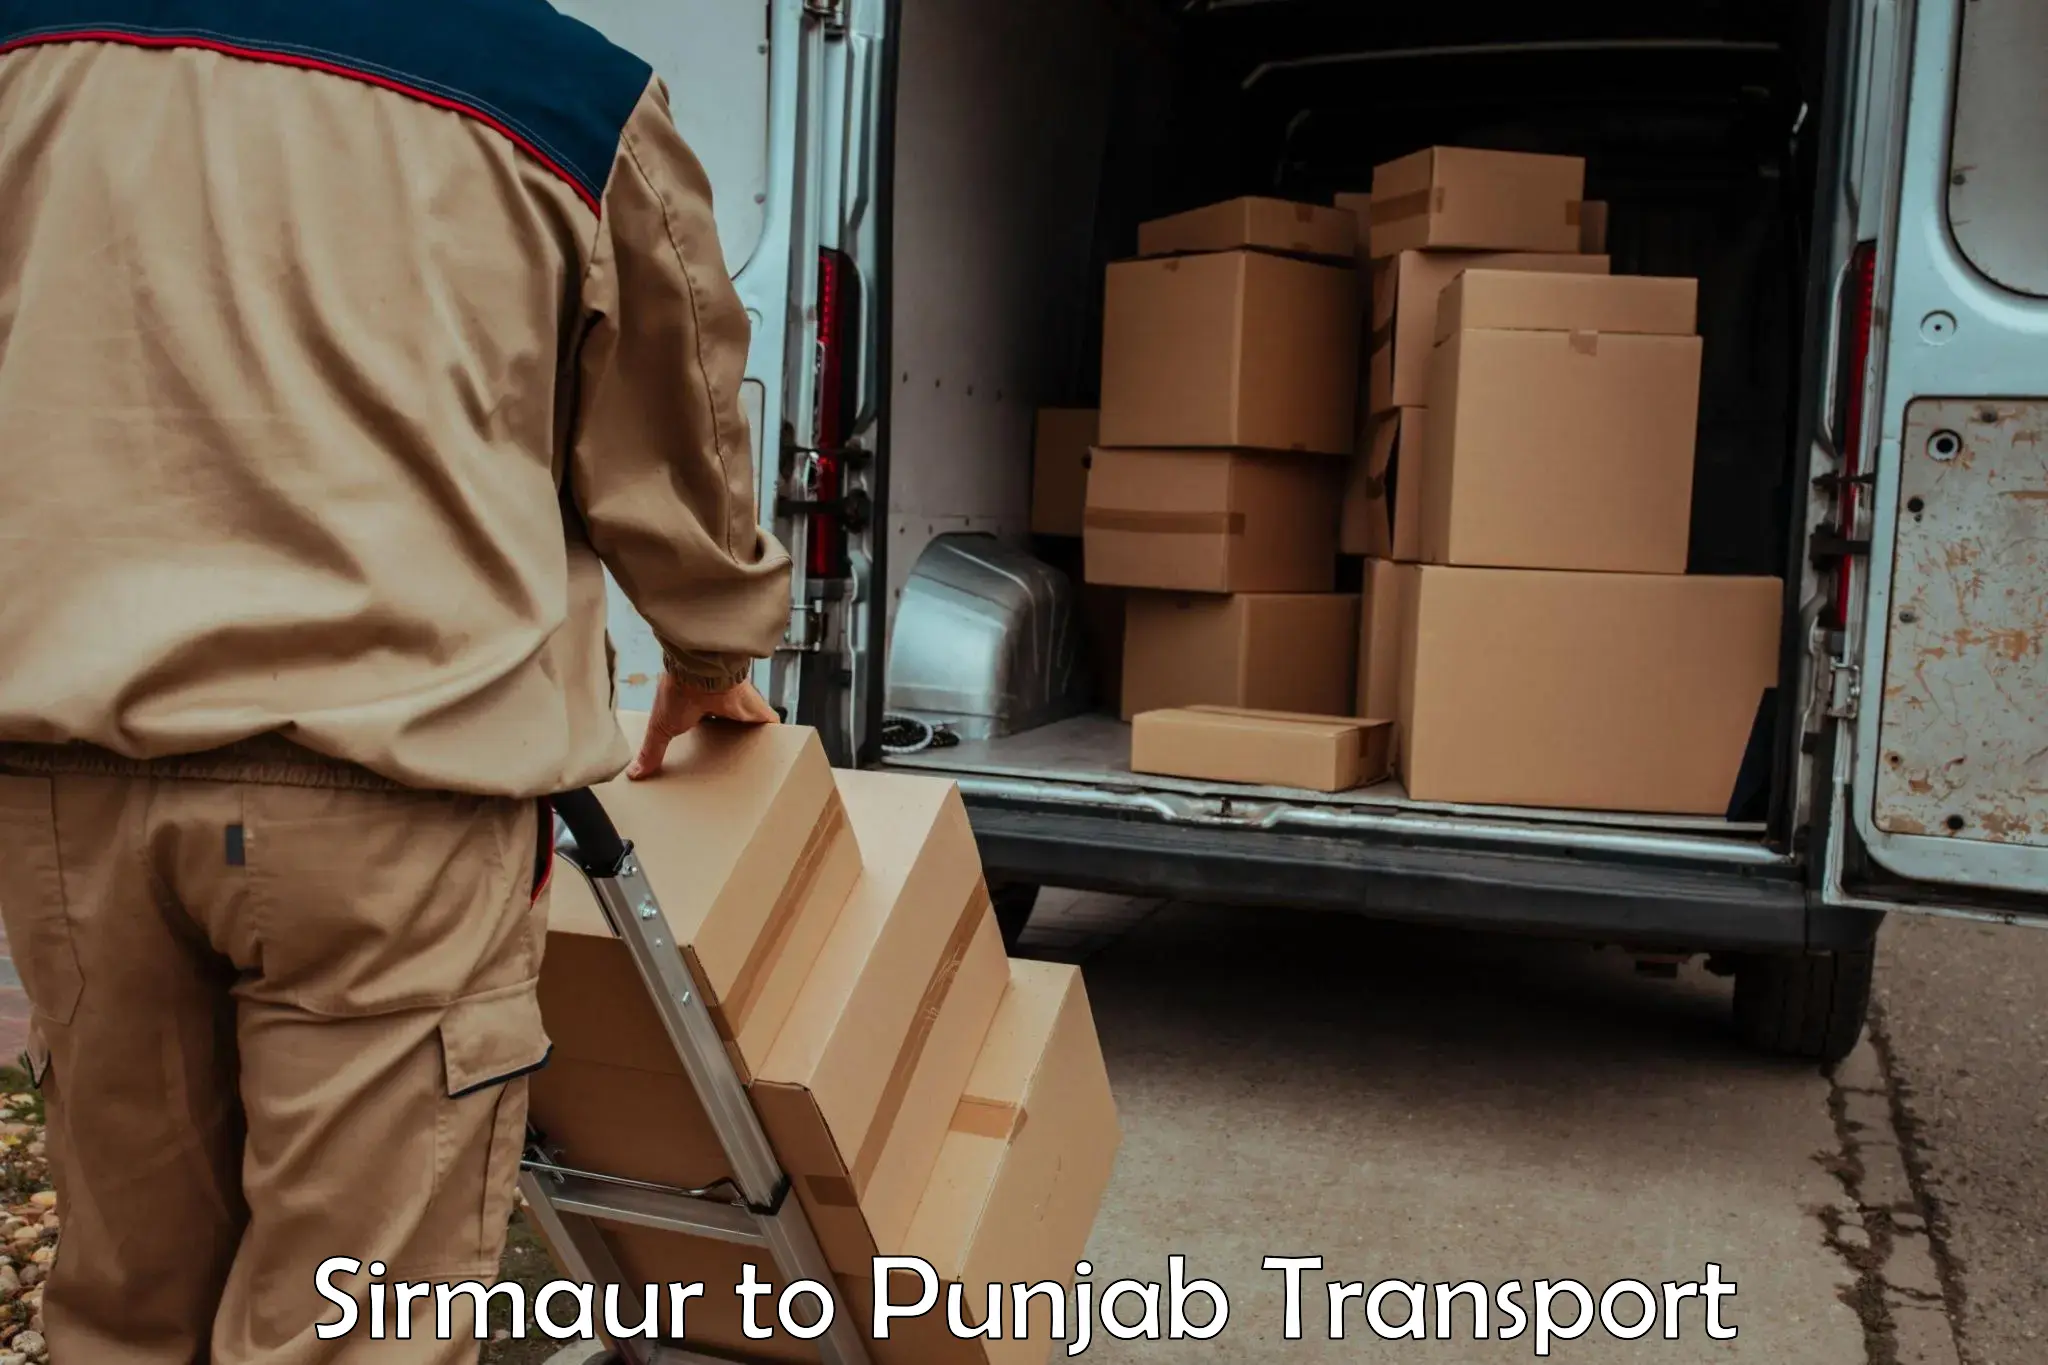 Express transport services Sirmaur to Punjab